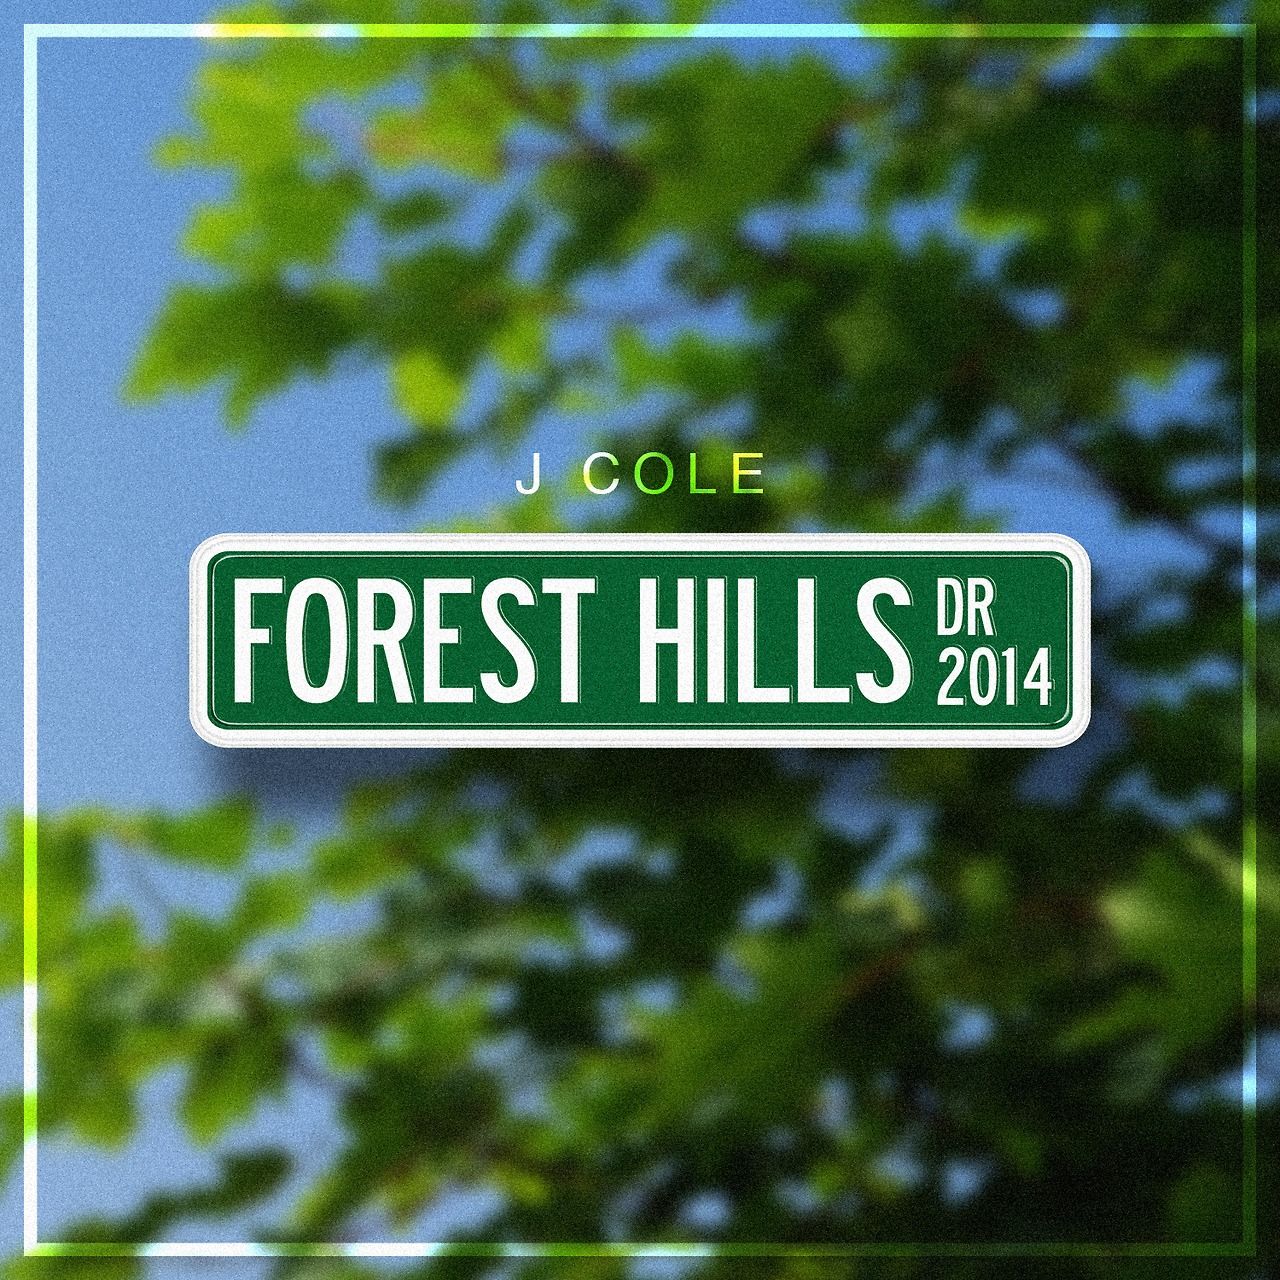 J. COLE: 2014 FOREST HILLS DRIVE (2014) City Studios